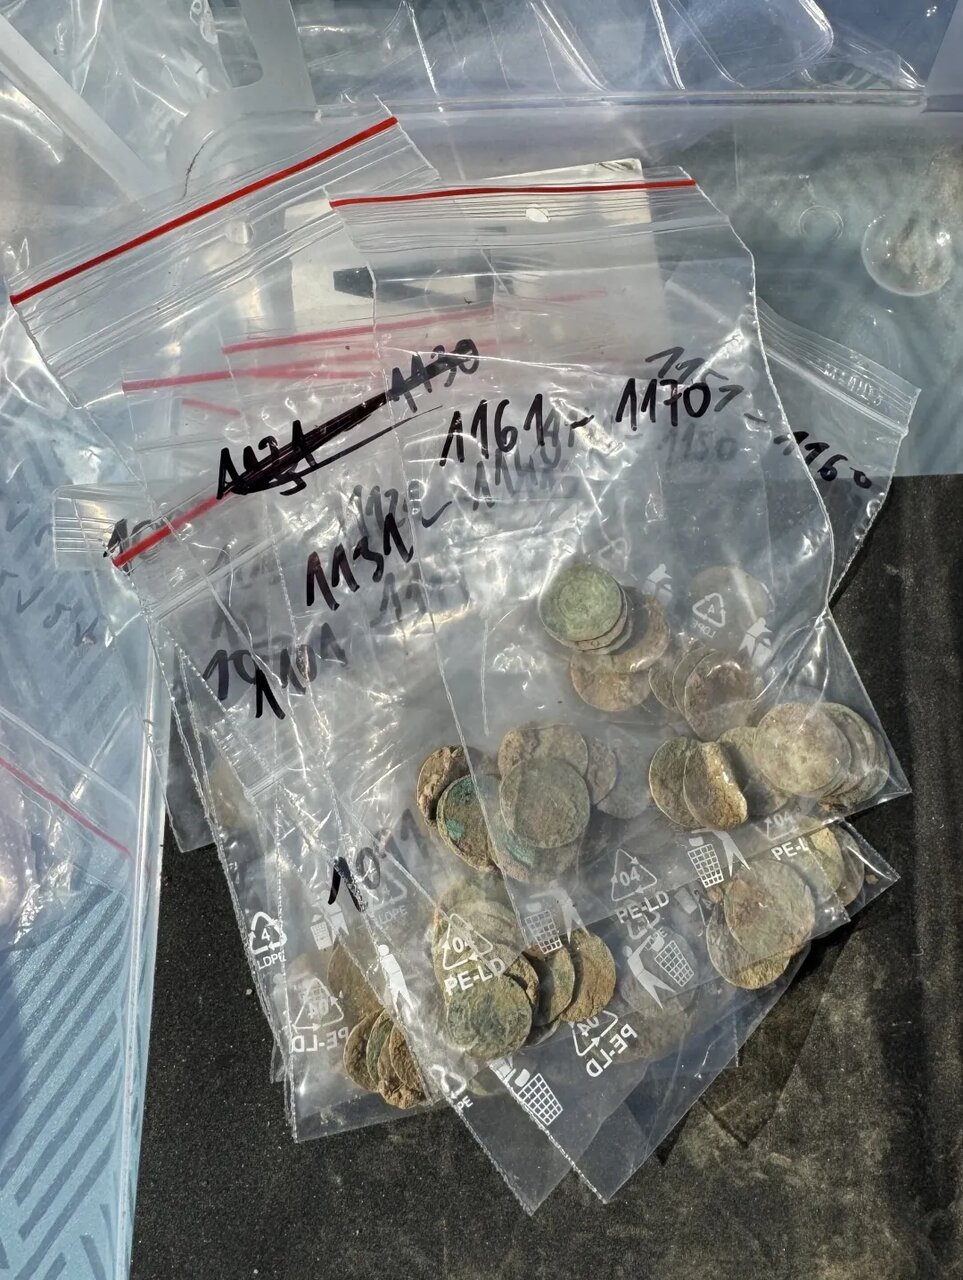 کوهنوردی، به شکل اتفاقی، گنجی با ۲۱۵۰ سکه پیدا کرد!